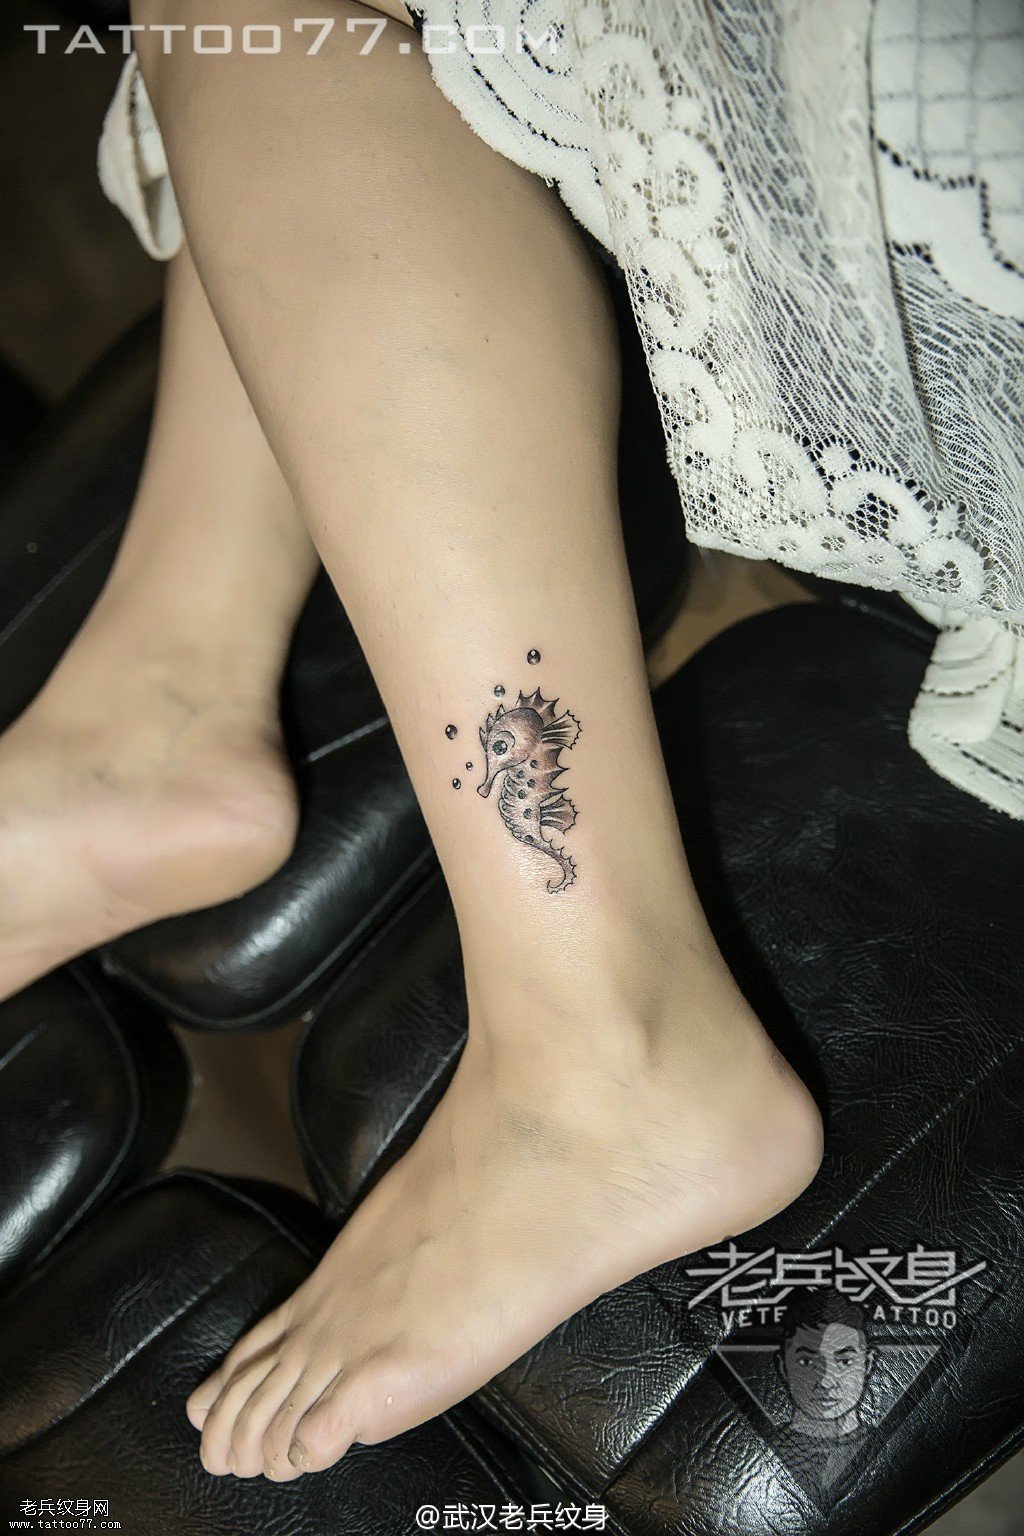 俩美女腿部小海马纹身图案作品